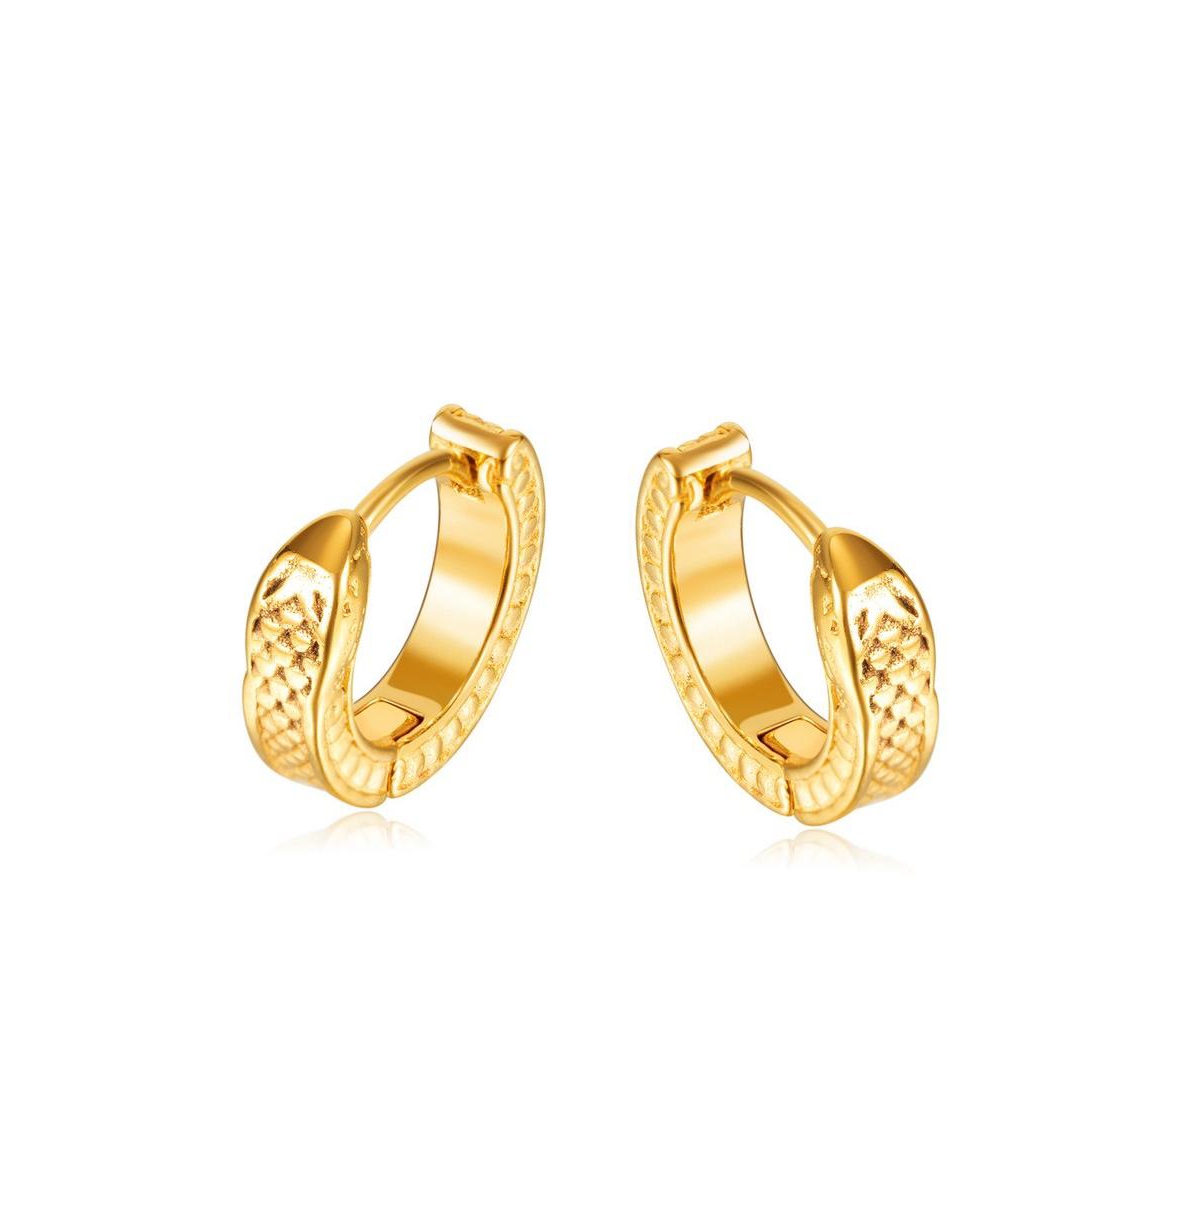 Stainless Steel Textured Huggie Hoop Earrings - Gold